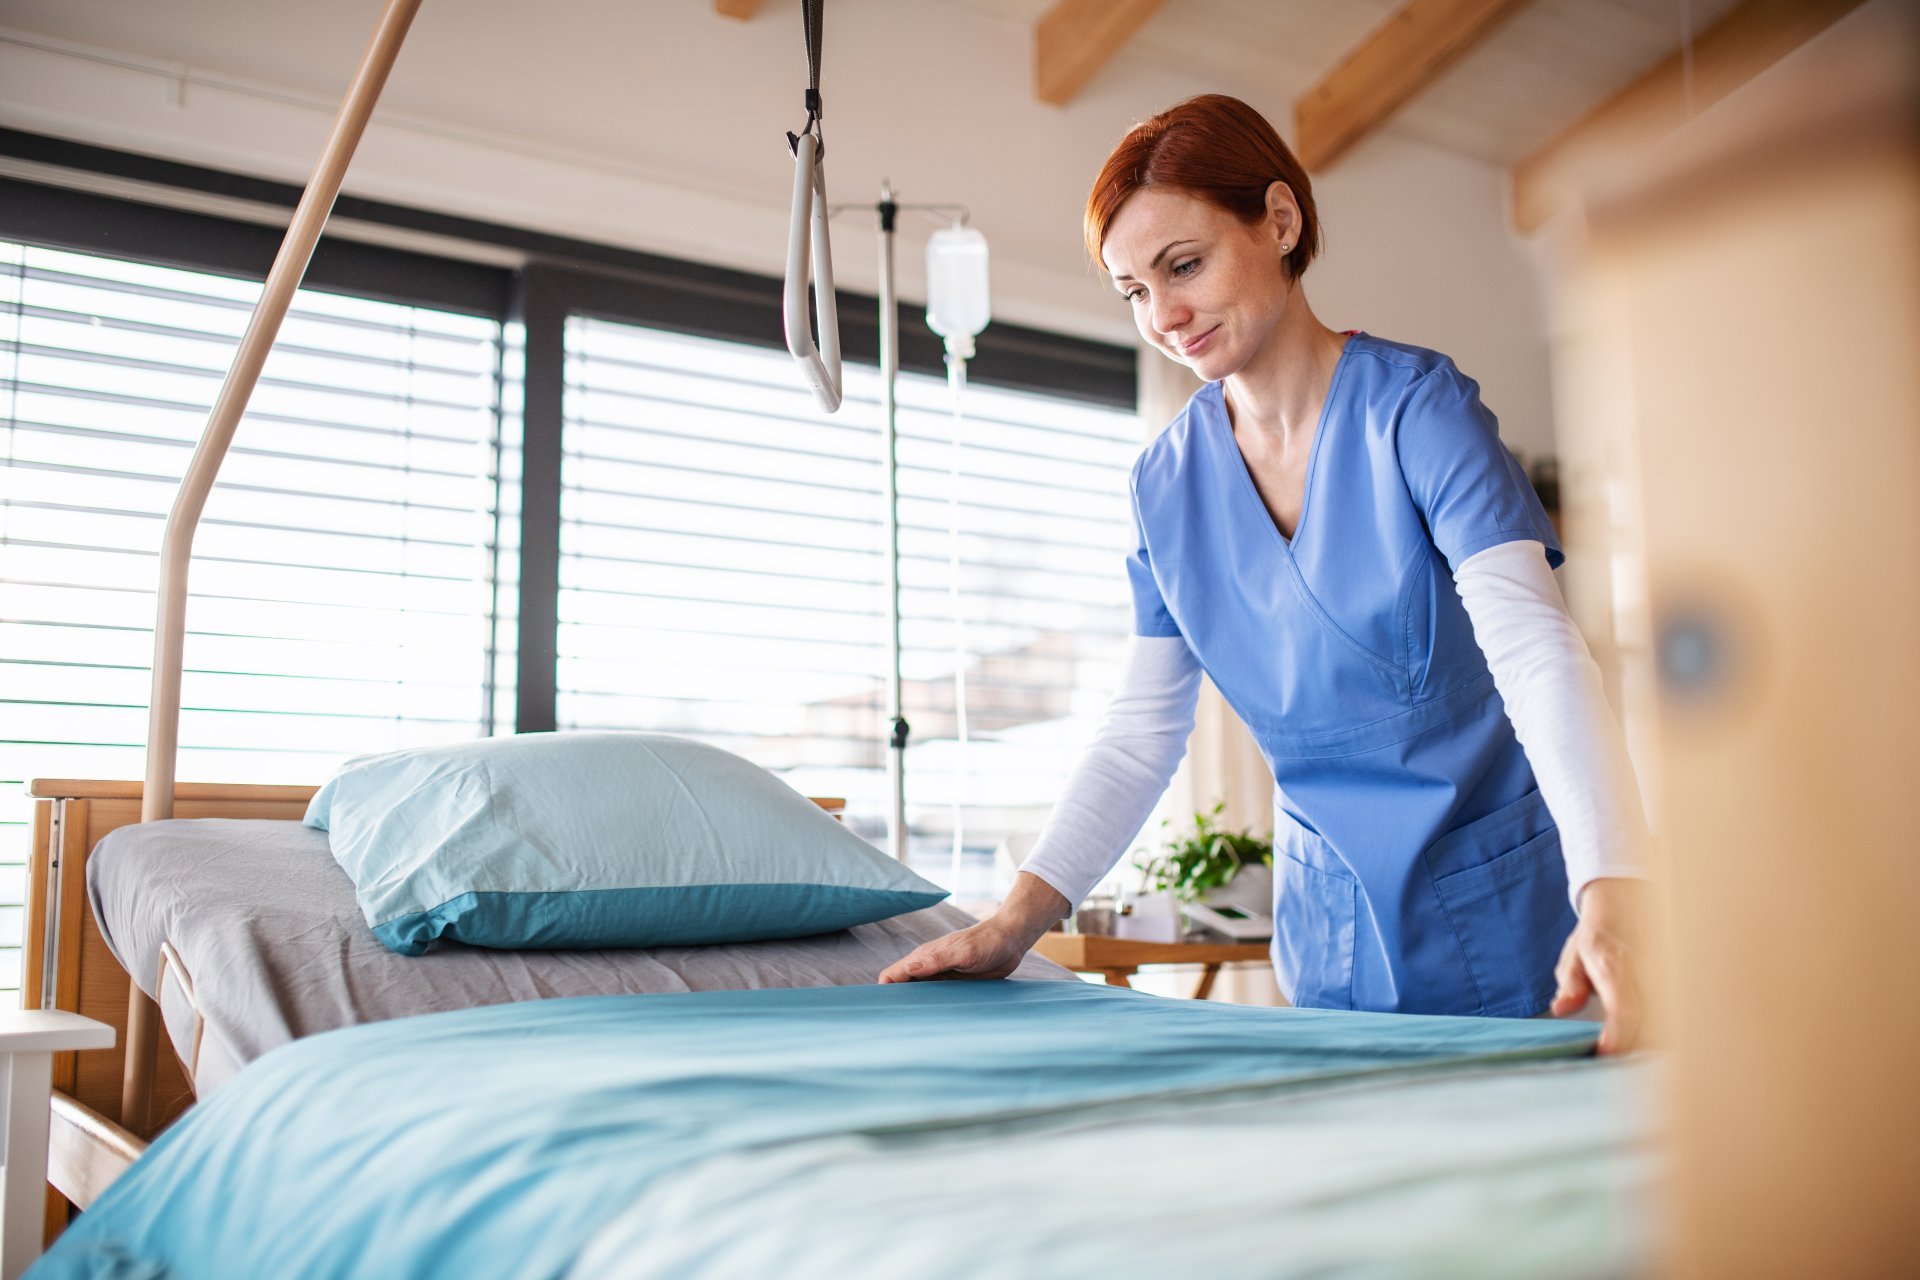 A female nurse changes bedding for a patient.